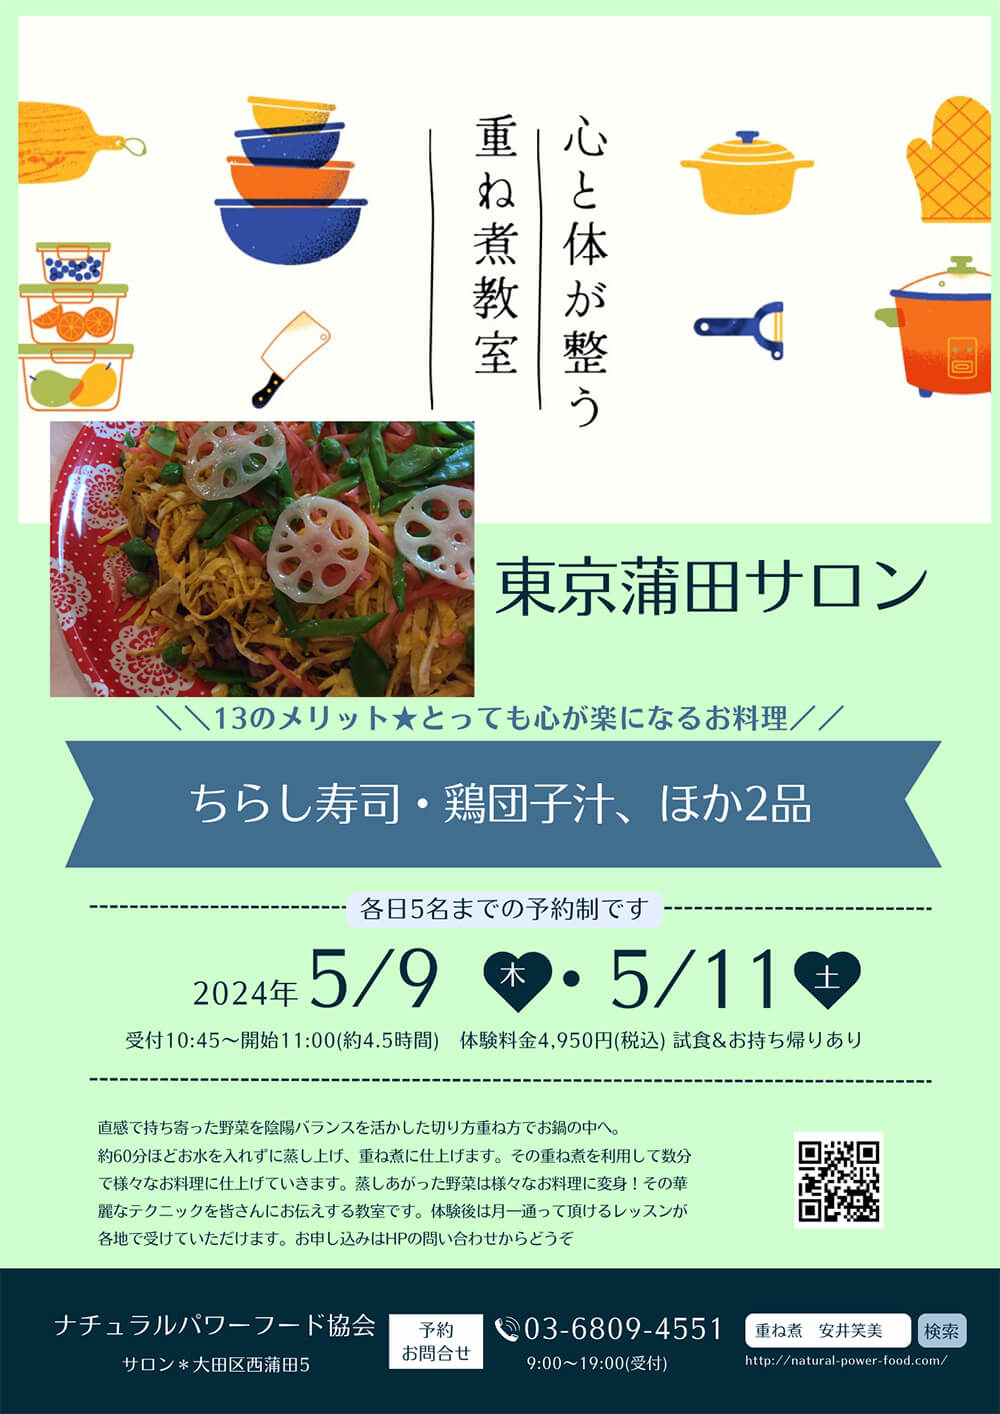 【5月9日 重ね煮・東京サロン】ちらし寿司、鶏団子汁ほか